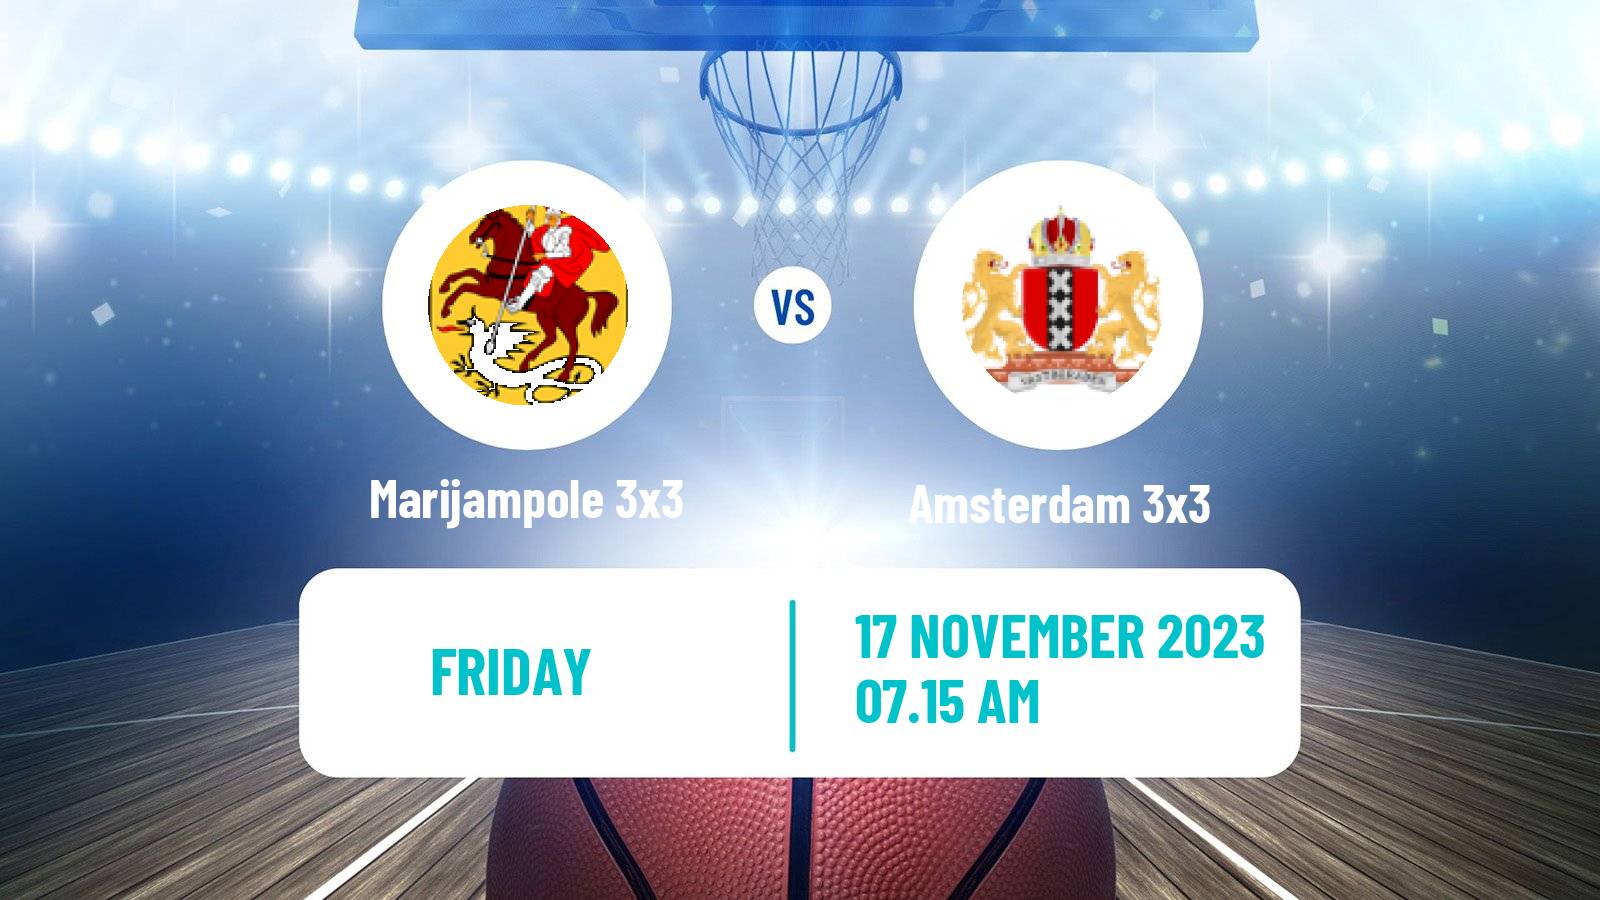 Basketball World Tour Manama 3x3 Marijampole 3x3 - Amsterdam 3x3